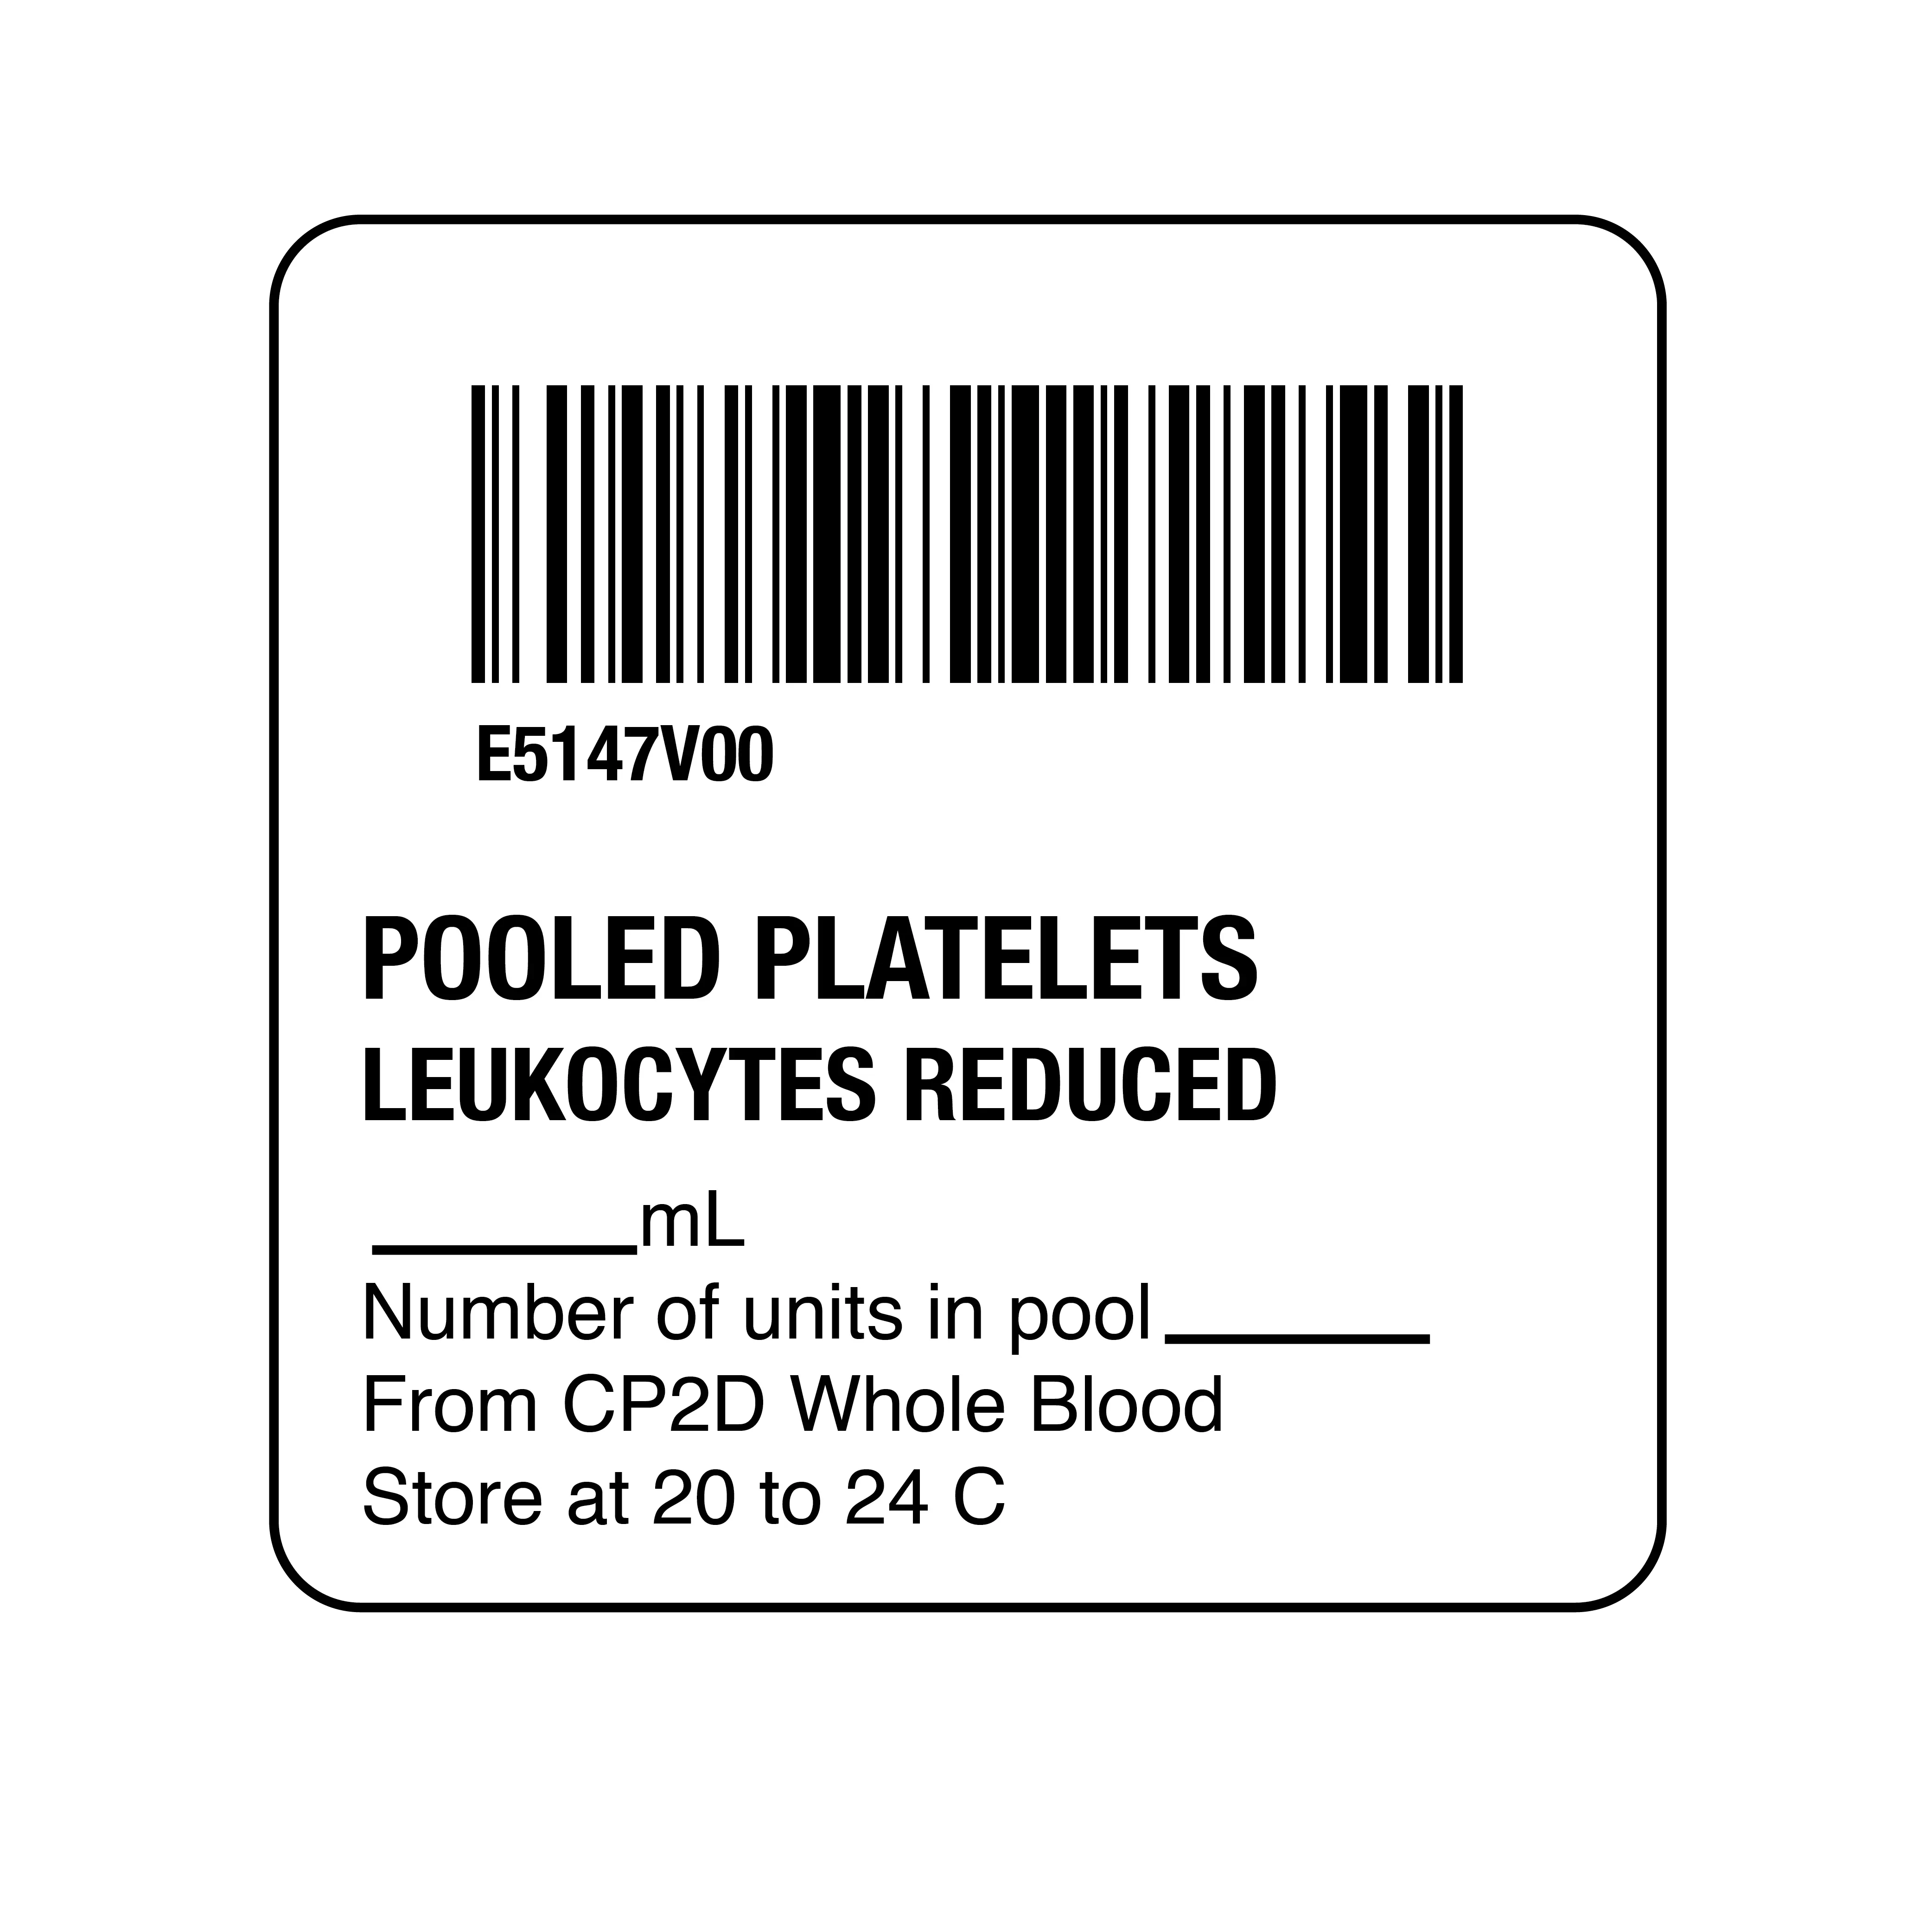 ISBT 128 Pooled Platelets Leukocytes Reduced